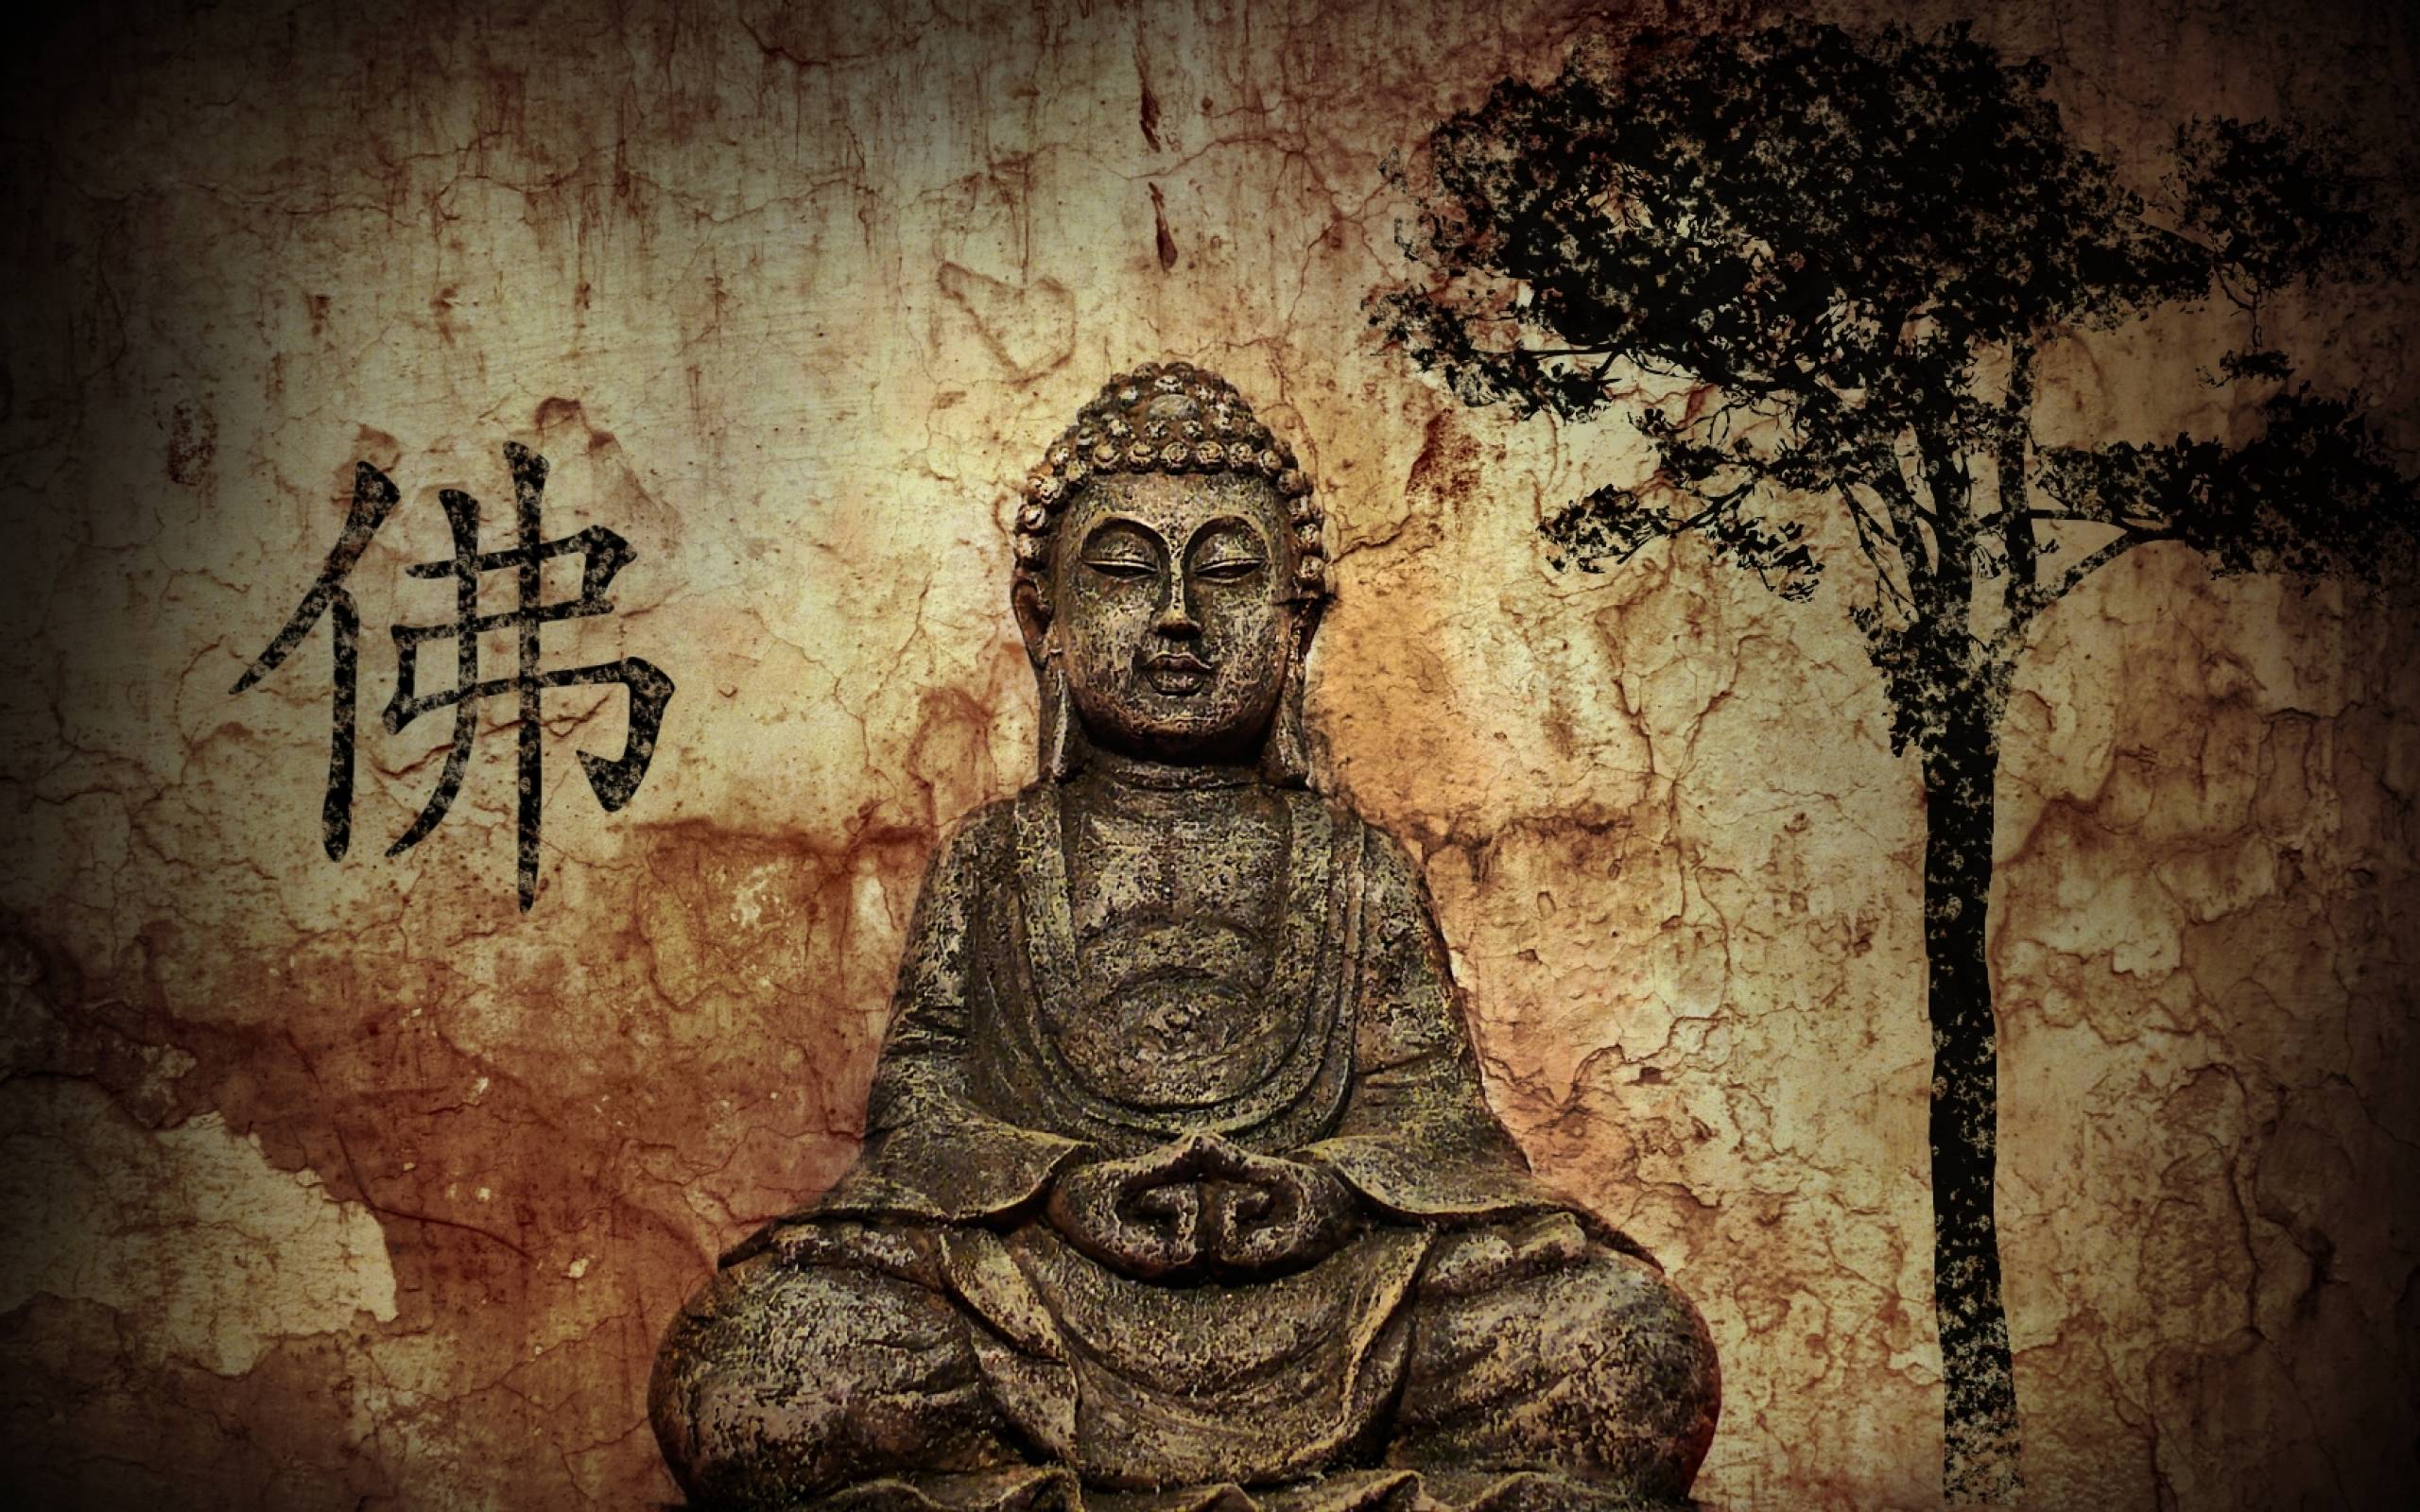 Bộ ảnh Phật 3D đẹp nhất  Ảnh phật giáo chất lượng